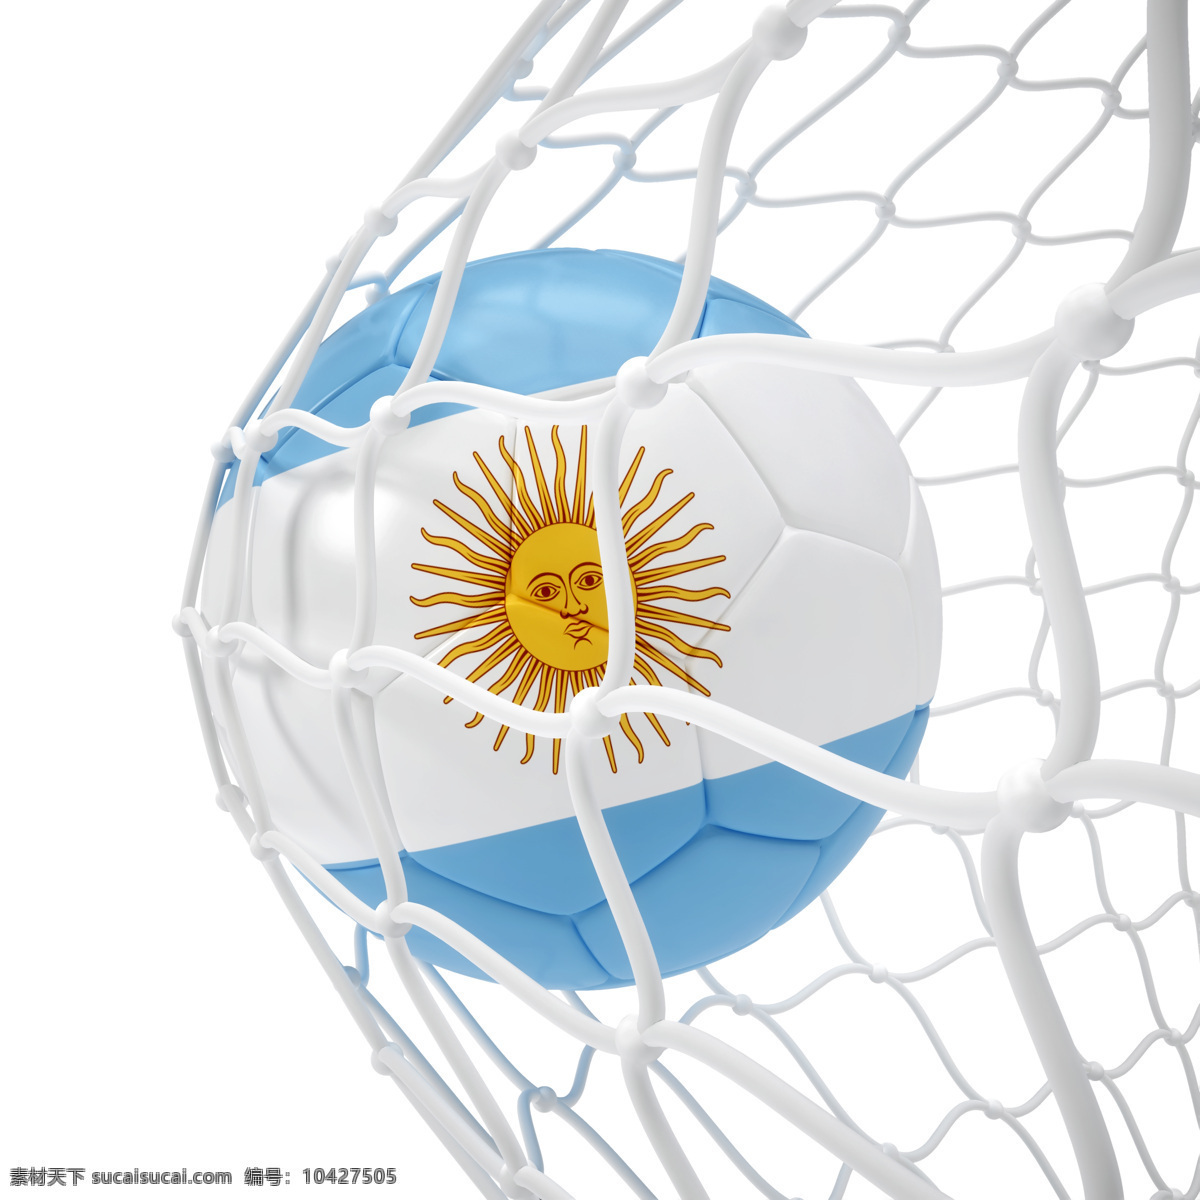 阿根廷 足球 阿根廷足球 进球 球门 足球比赛 赛事 足球运动 体育运动 体育项目 生活百科